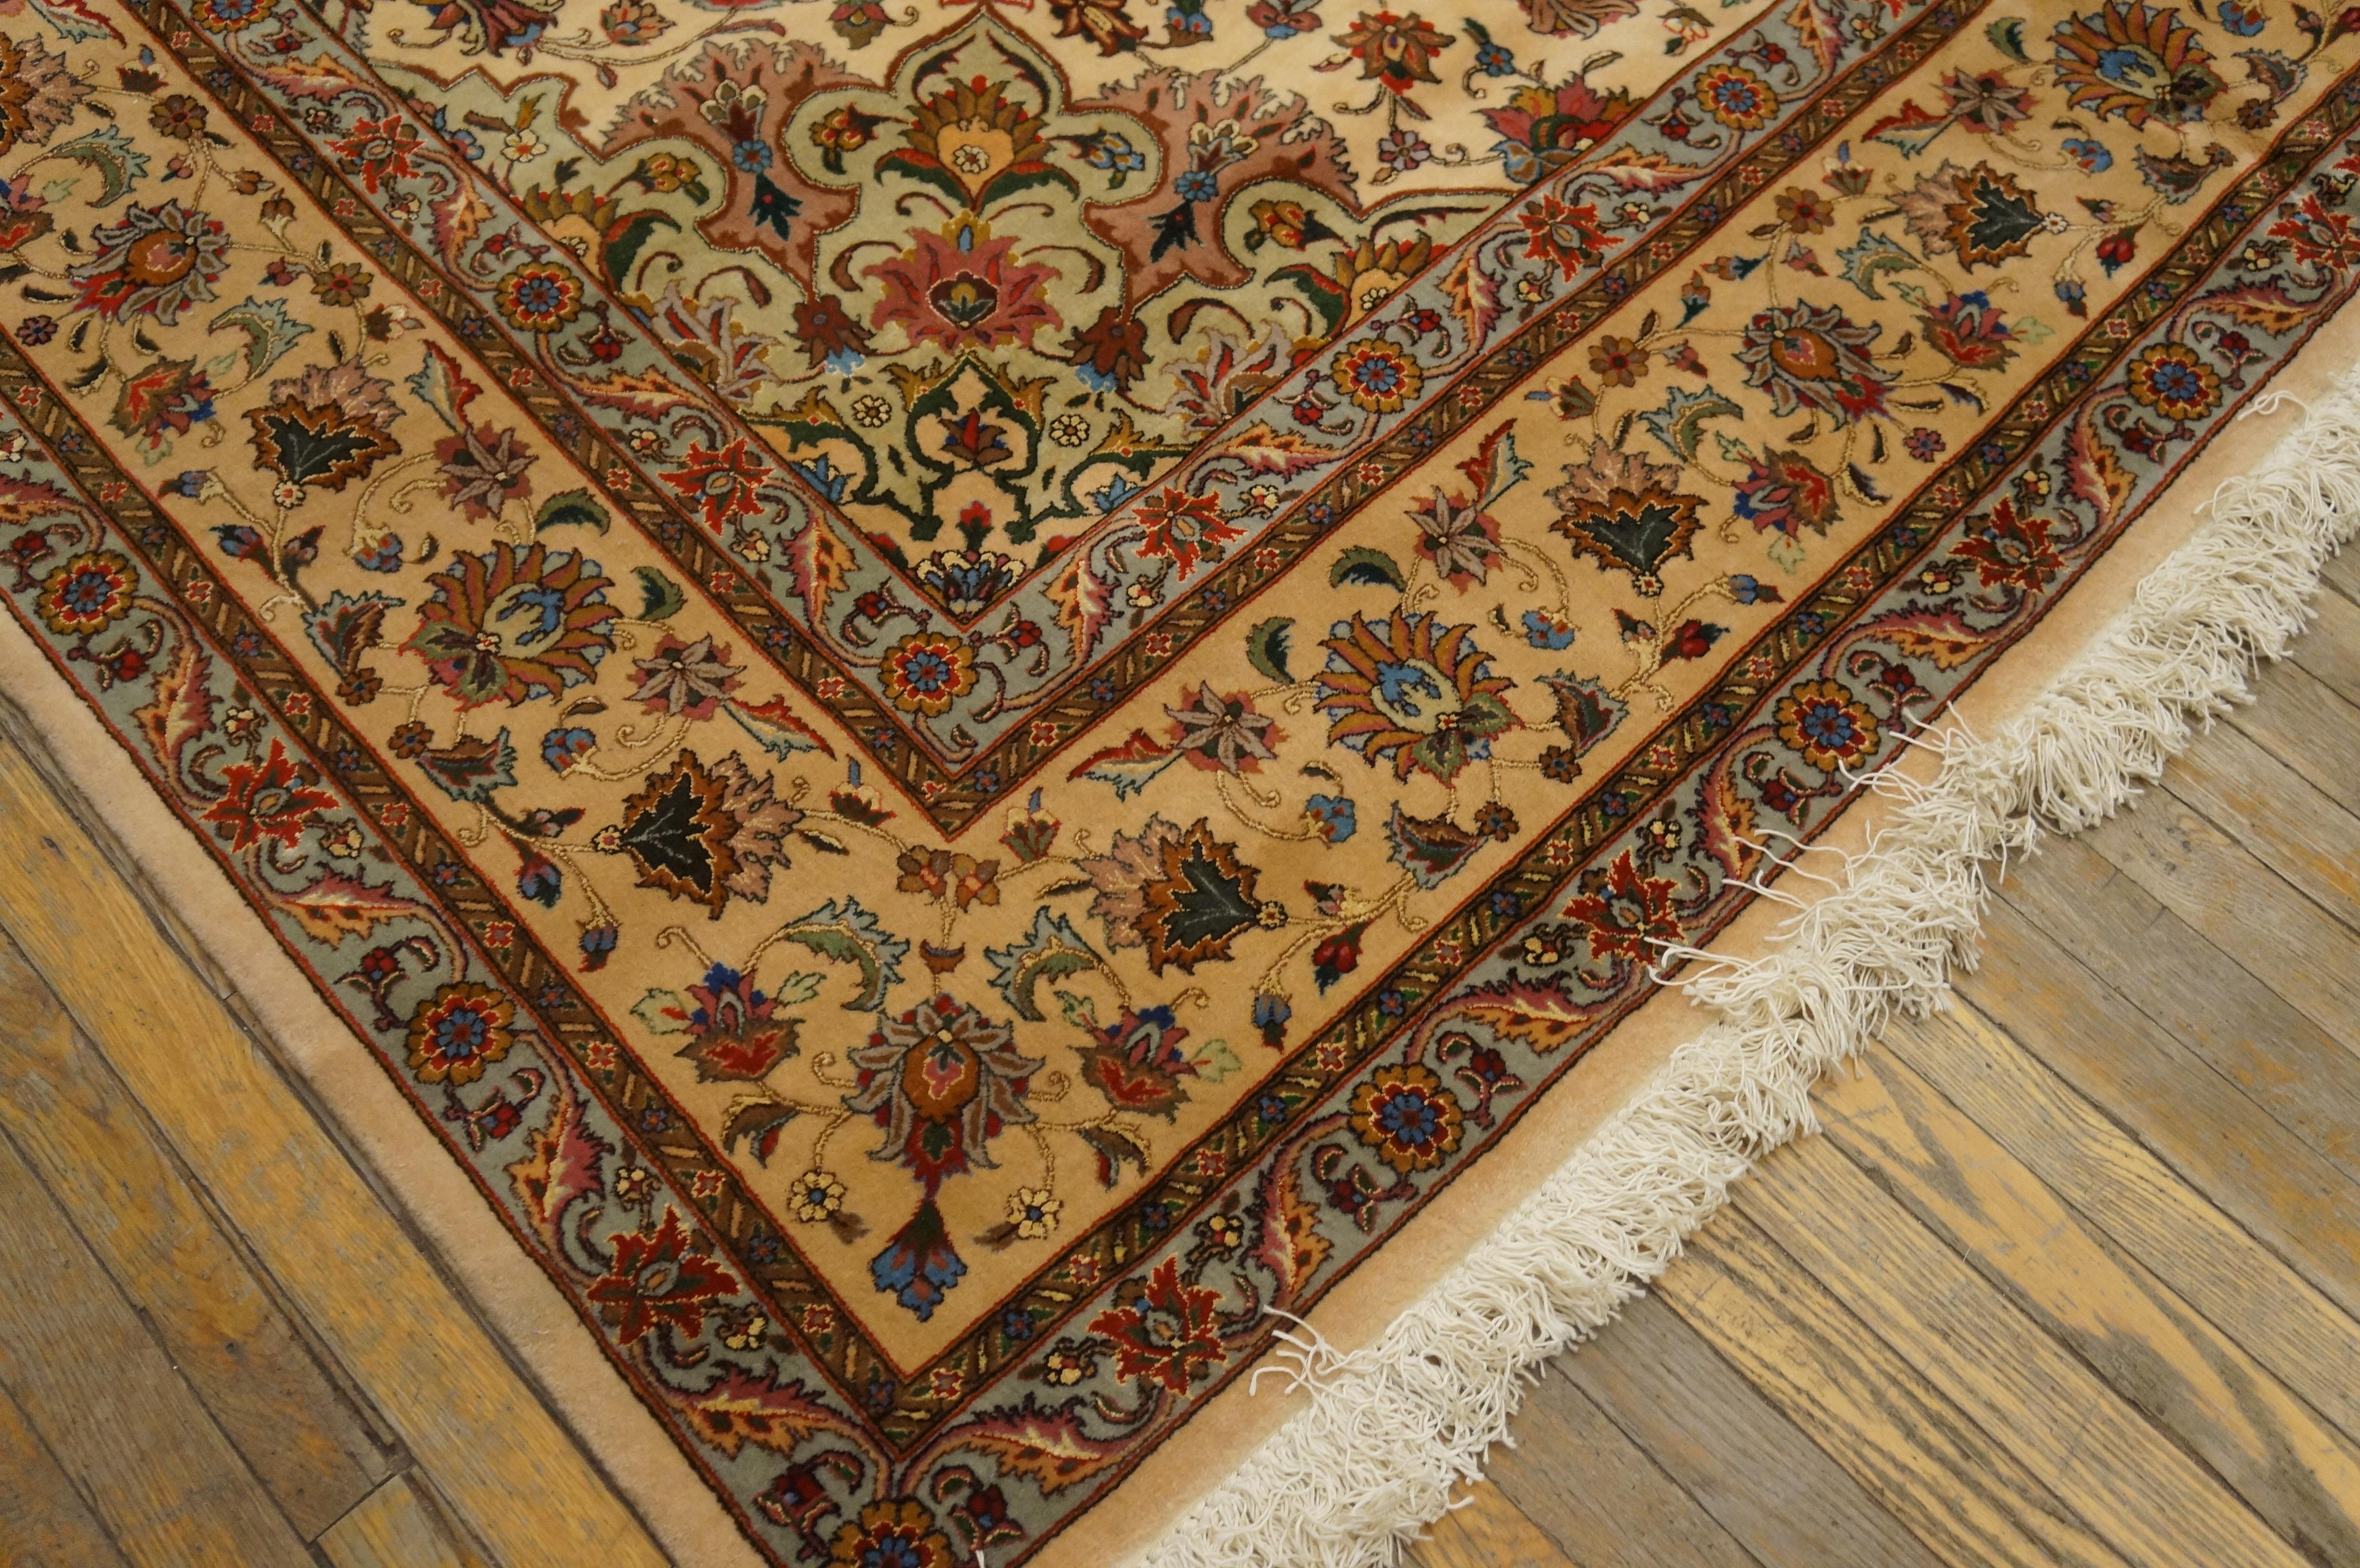 Antique Persian Tabriz rug, measures: 8'0